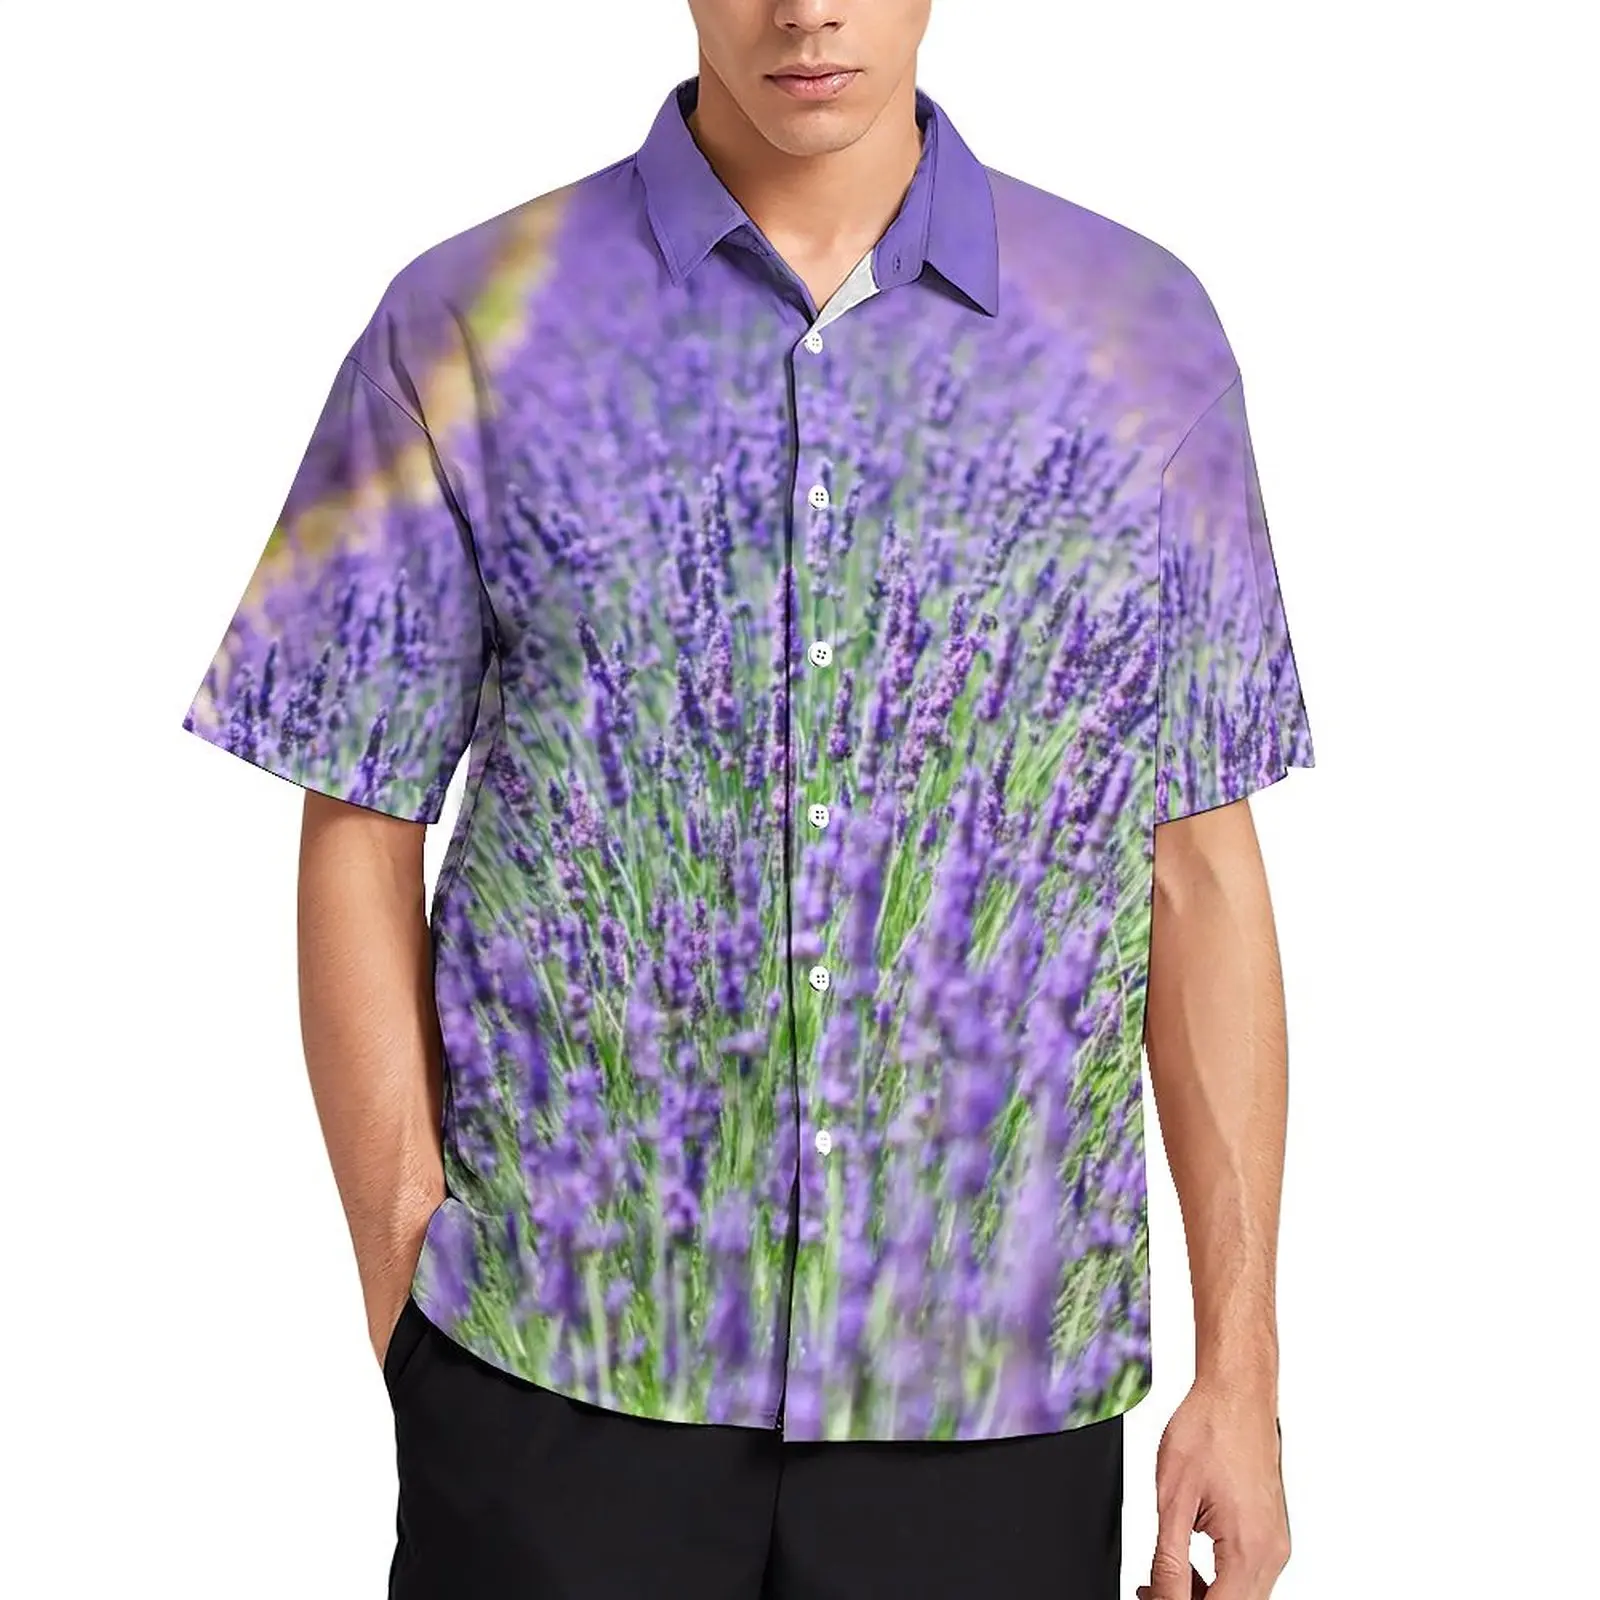 

Повседневная рубашка с принтом природы лаванды, Пляжная Свободная рубашка с натуральными фиолетовыми цветами, винтажные блузки с коротким рукавом, топы большого размера с графическим принтом